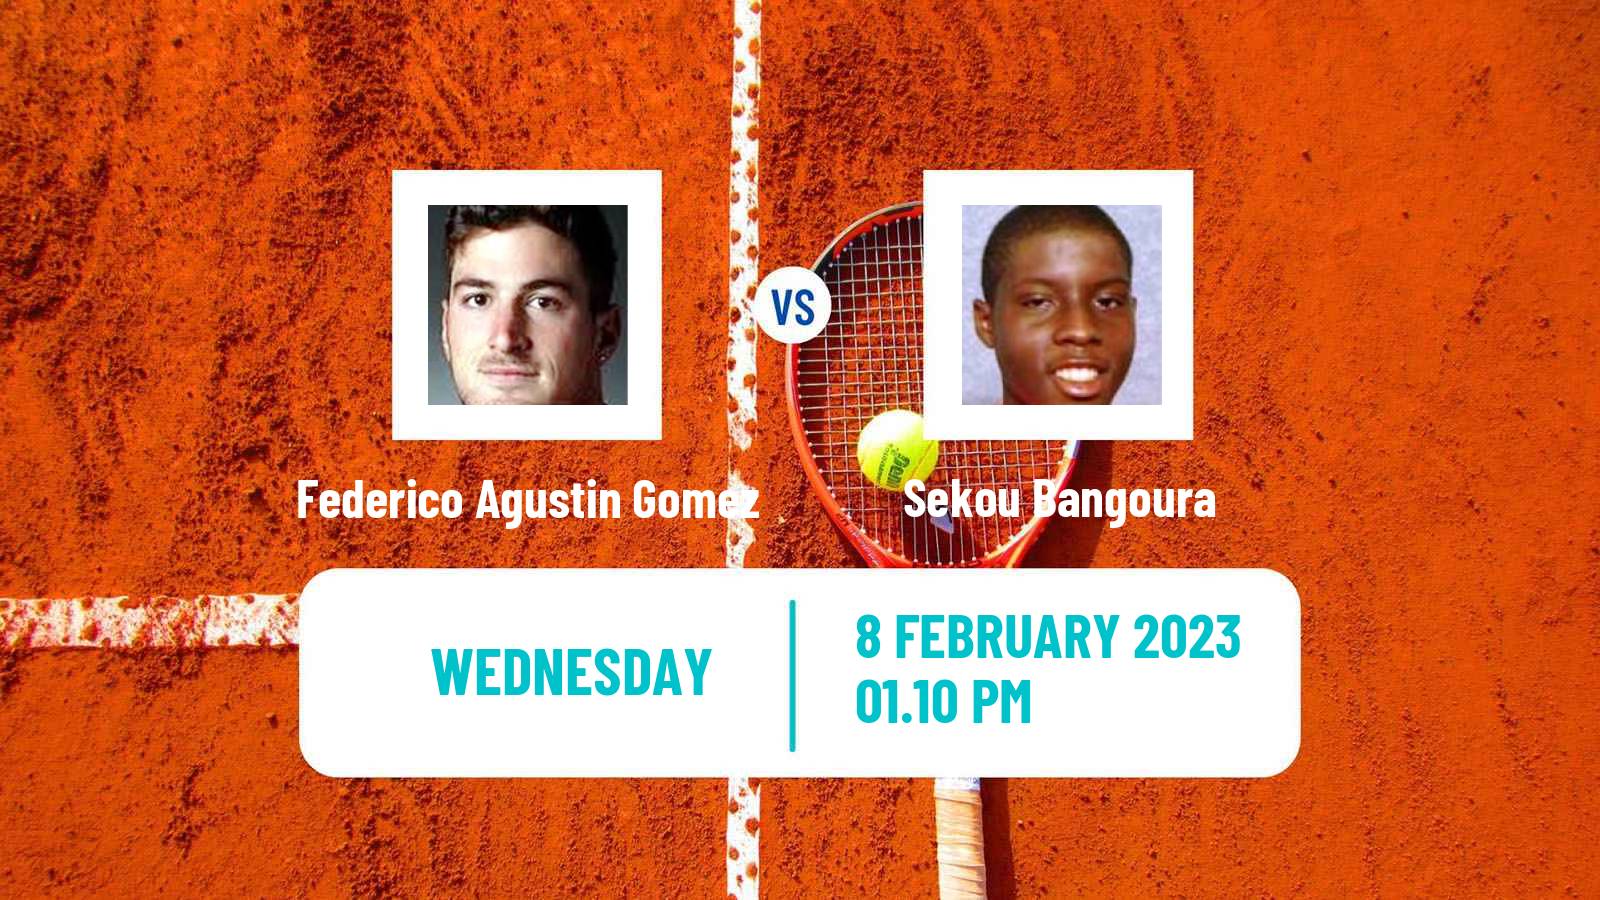 Tennis ITF Tournaments Federico Agustin Gomez - Sekou Bangoura